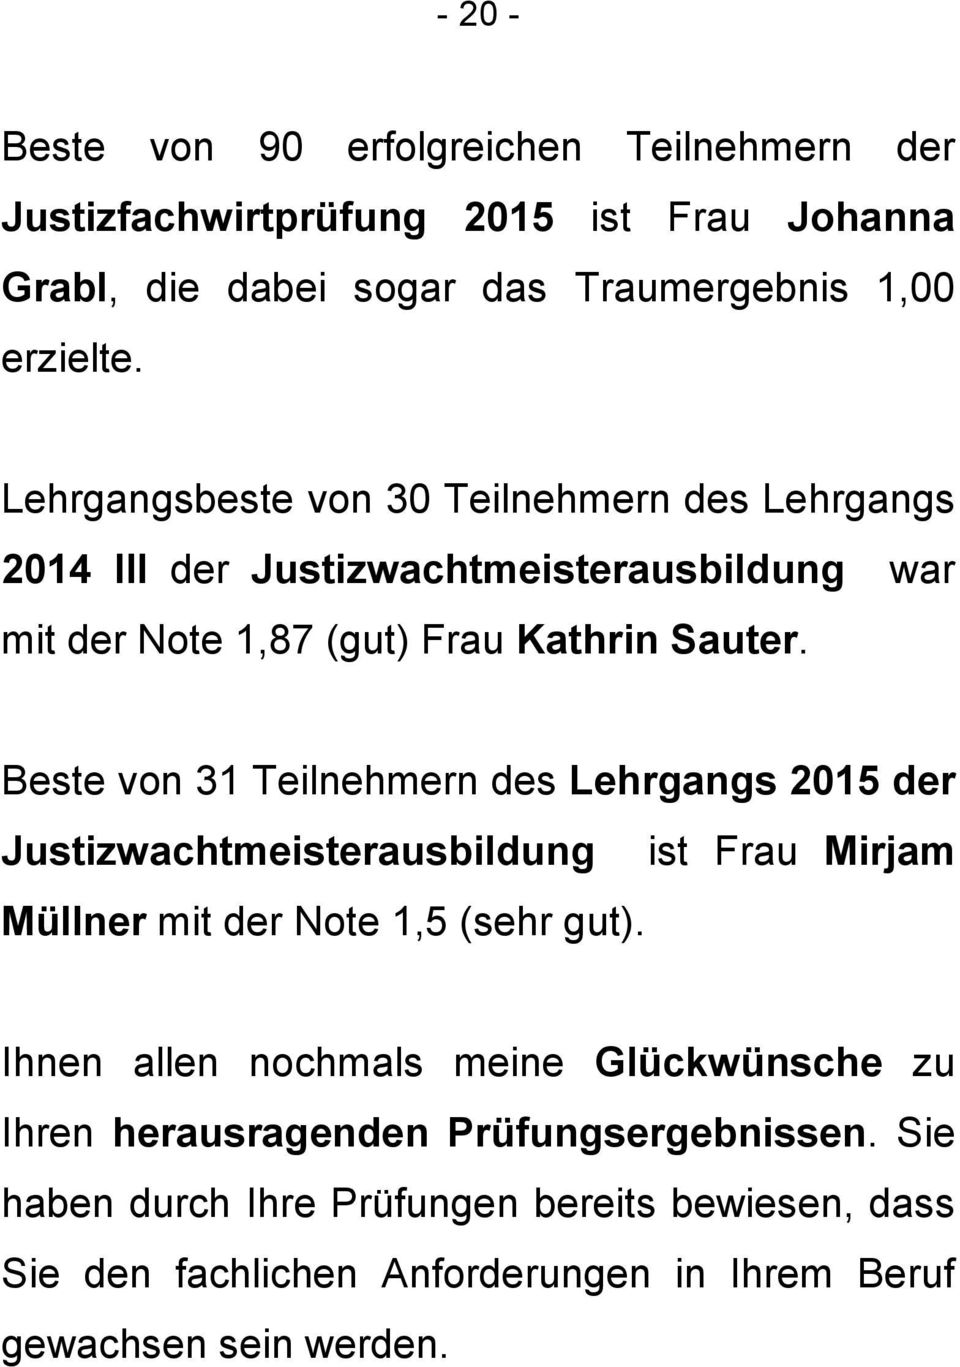 Beste von 31 Teilnehmern des Lehrgangs 2015 der Justizwachtmeisterausbildung ist Frau Mirjam Müllner mit der Note 1,5 (sehr gut).